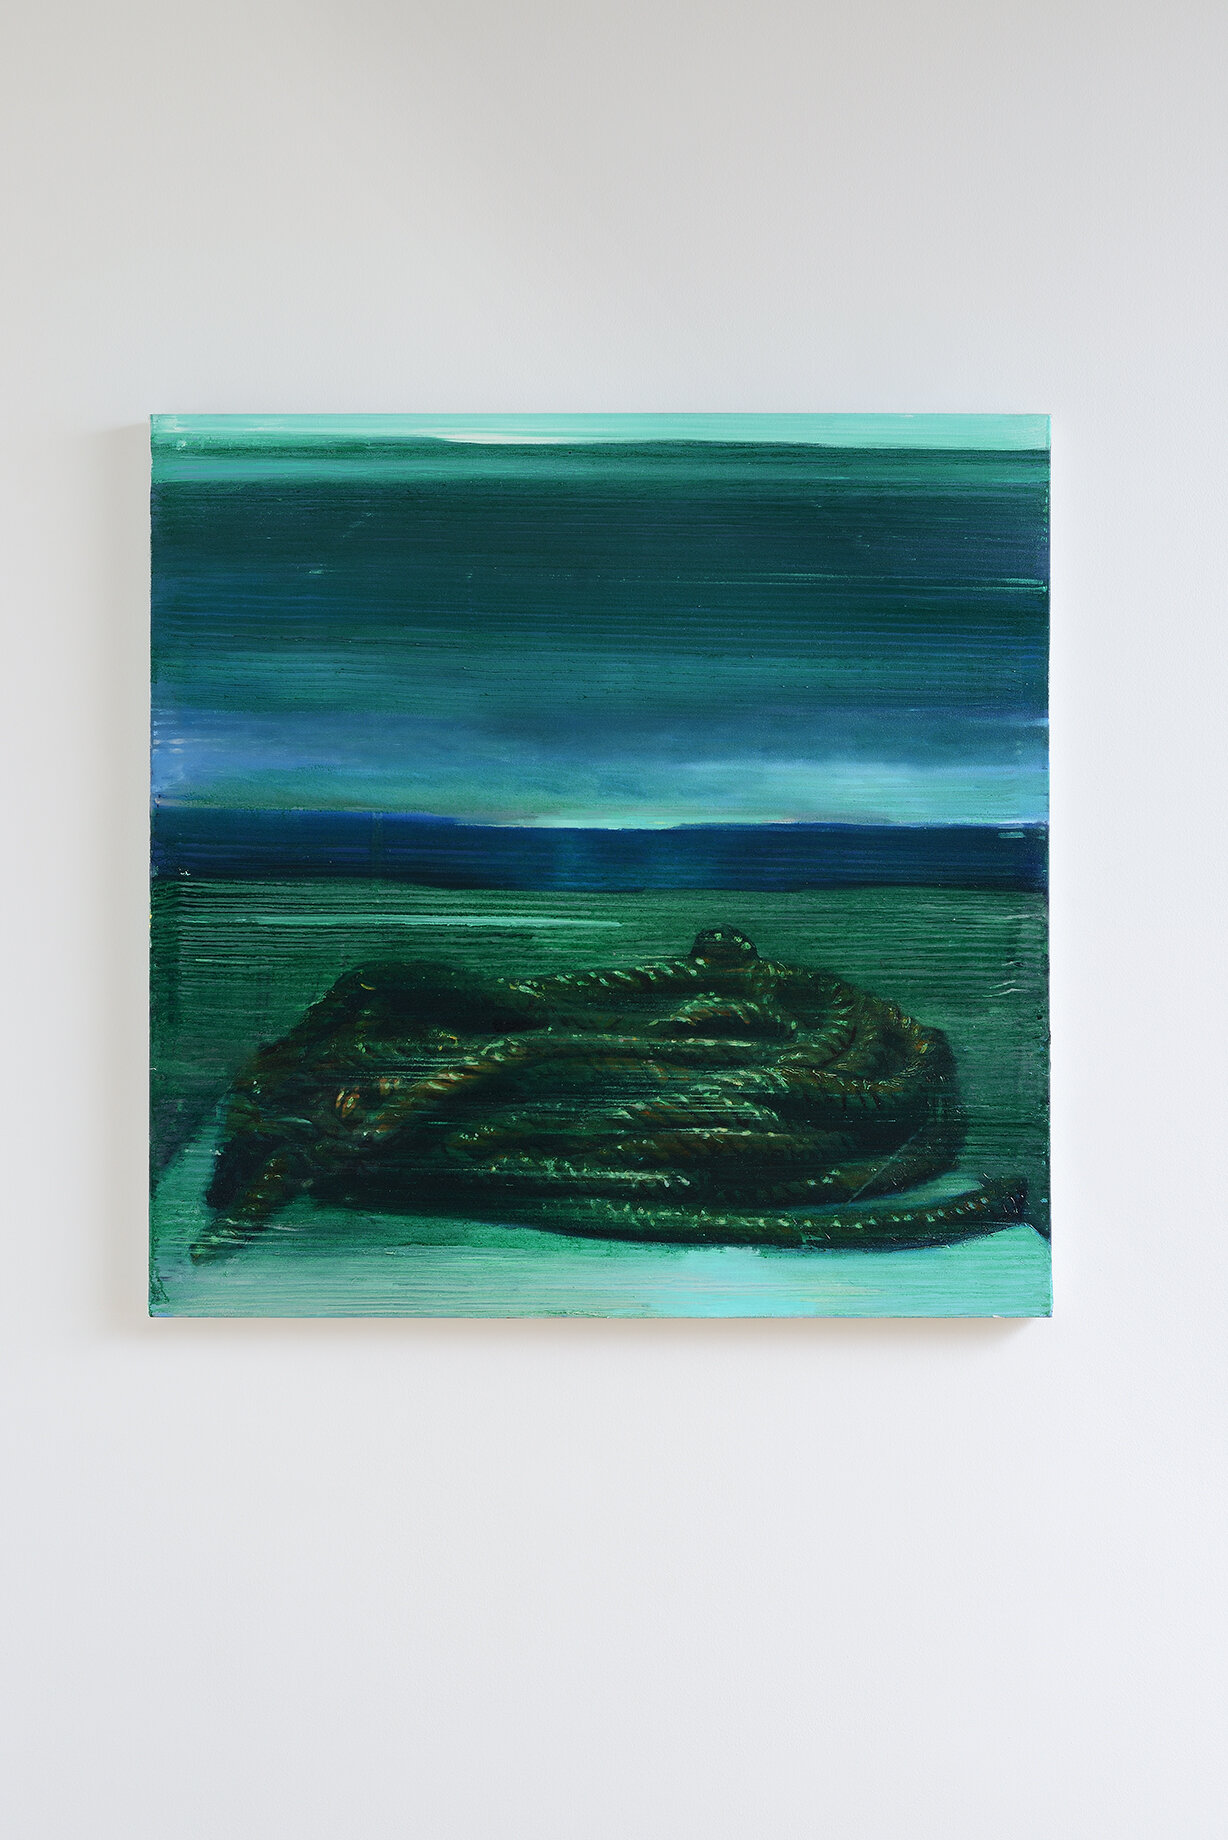   Length  , (2020), oil on canvas,100x100 cm    